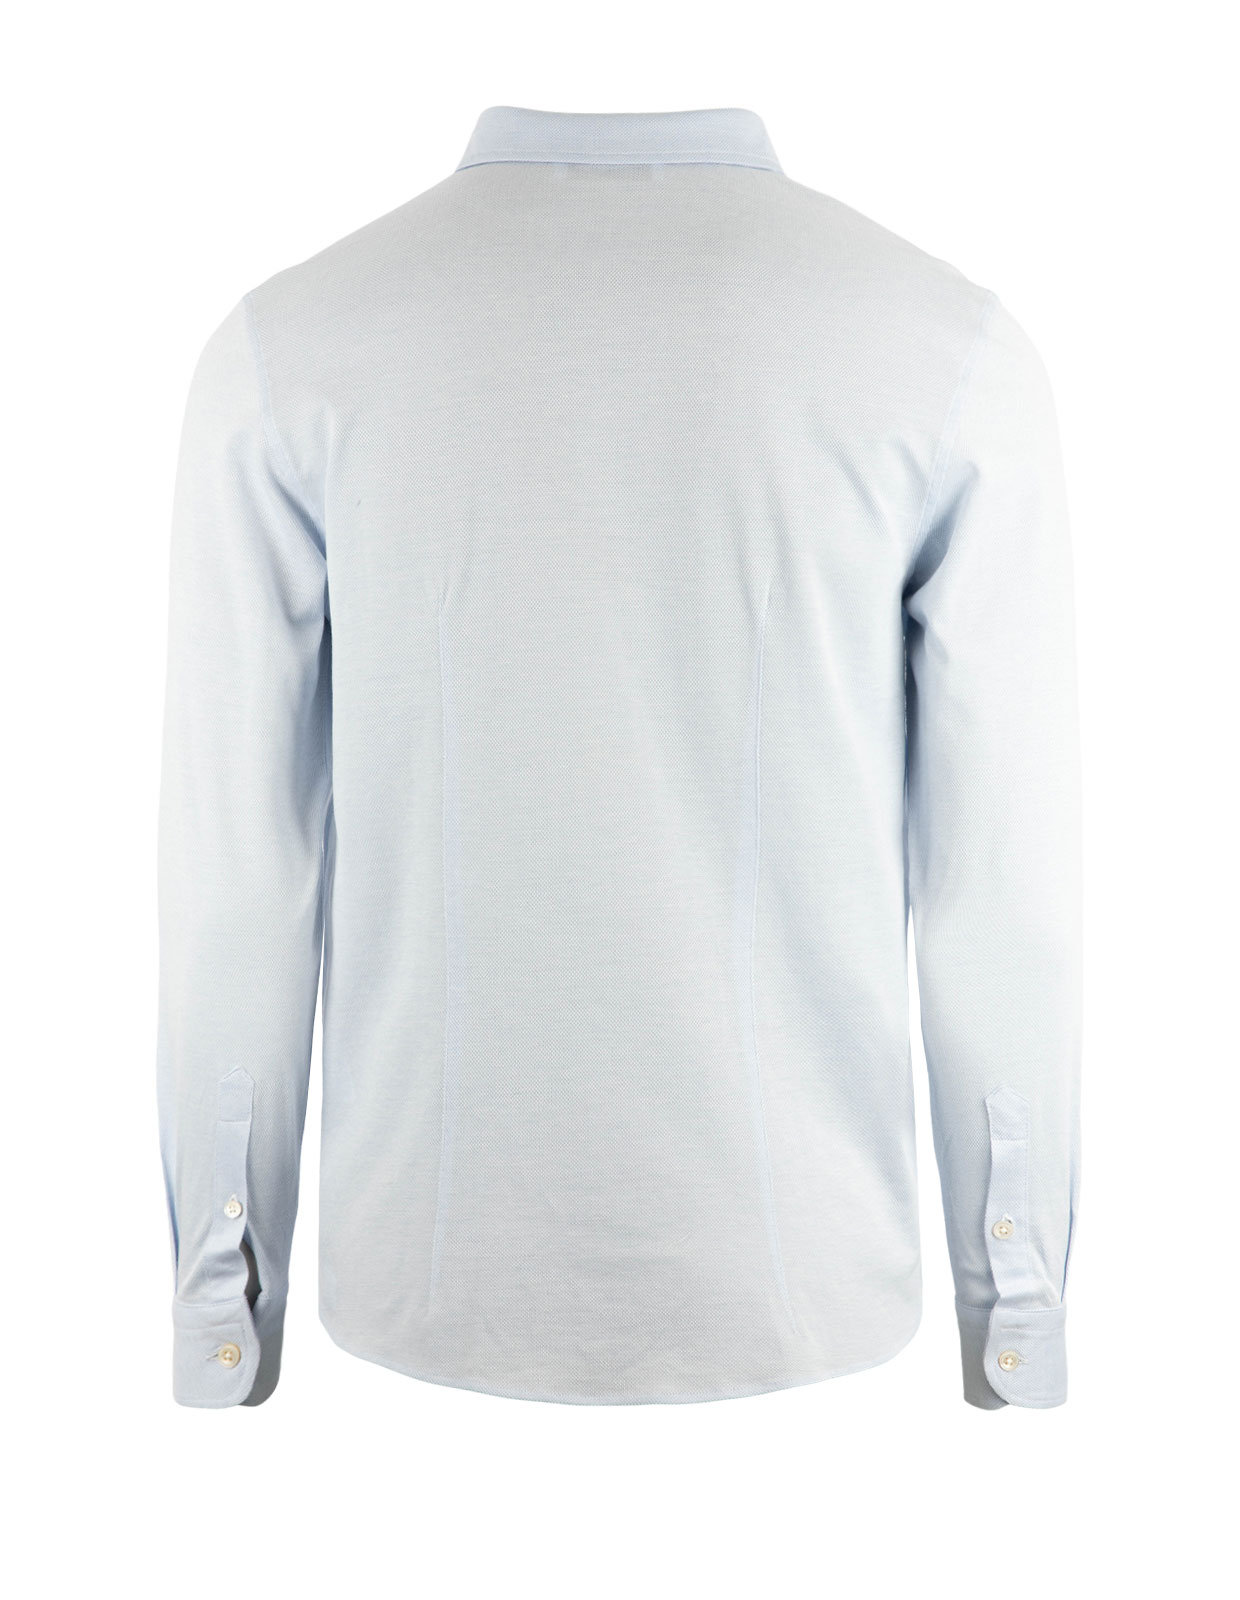 Jerseyskjorta Bomullspiké Ljusblå Stl 52